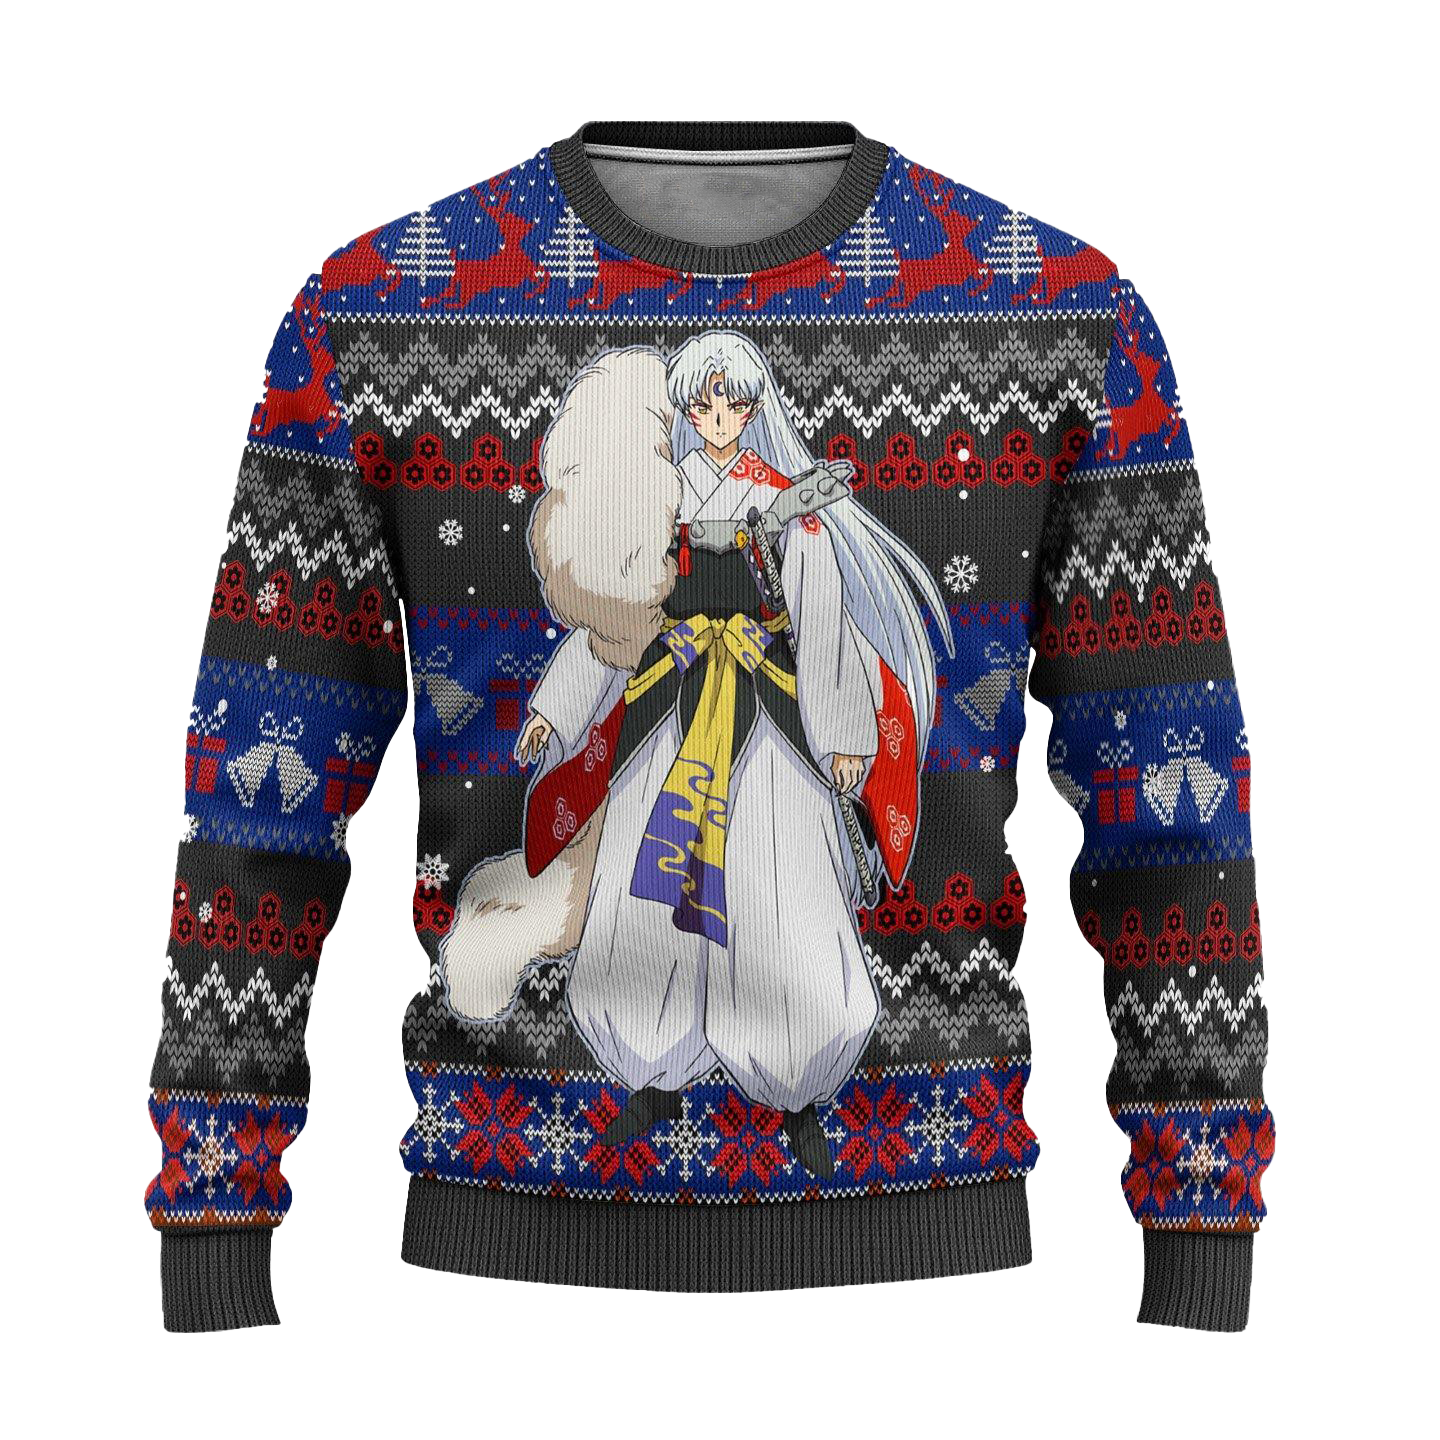 Sesshomaru Ugly Christmas Sweater Inuyasha Anime Xmas Gift